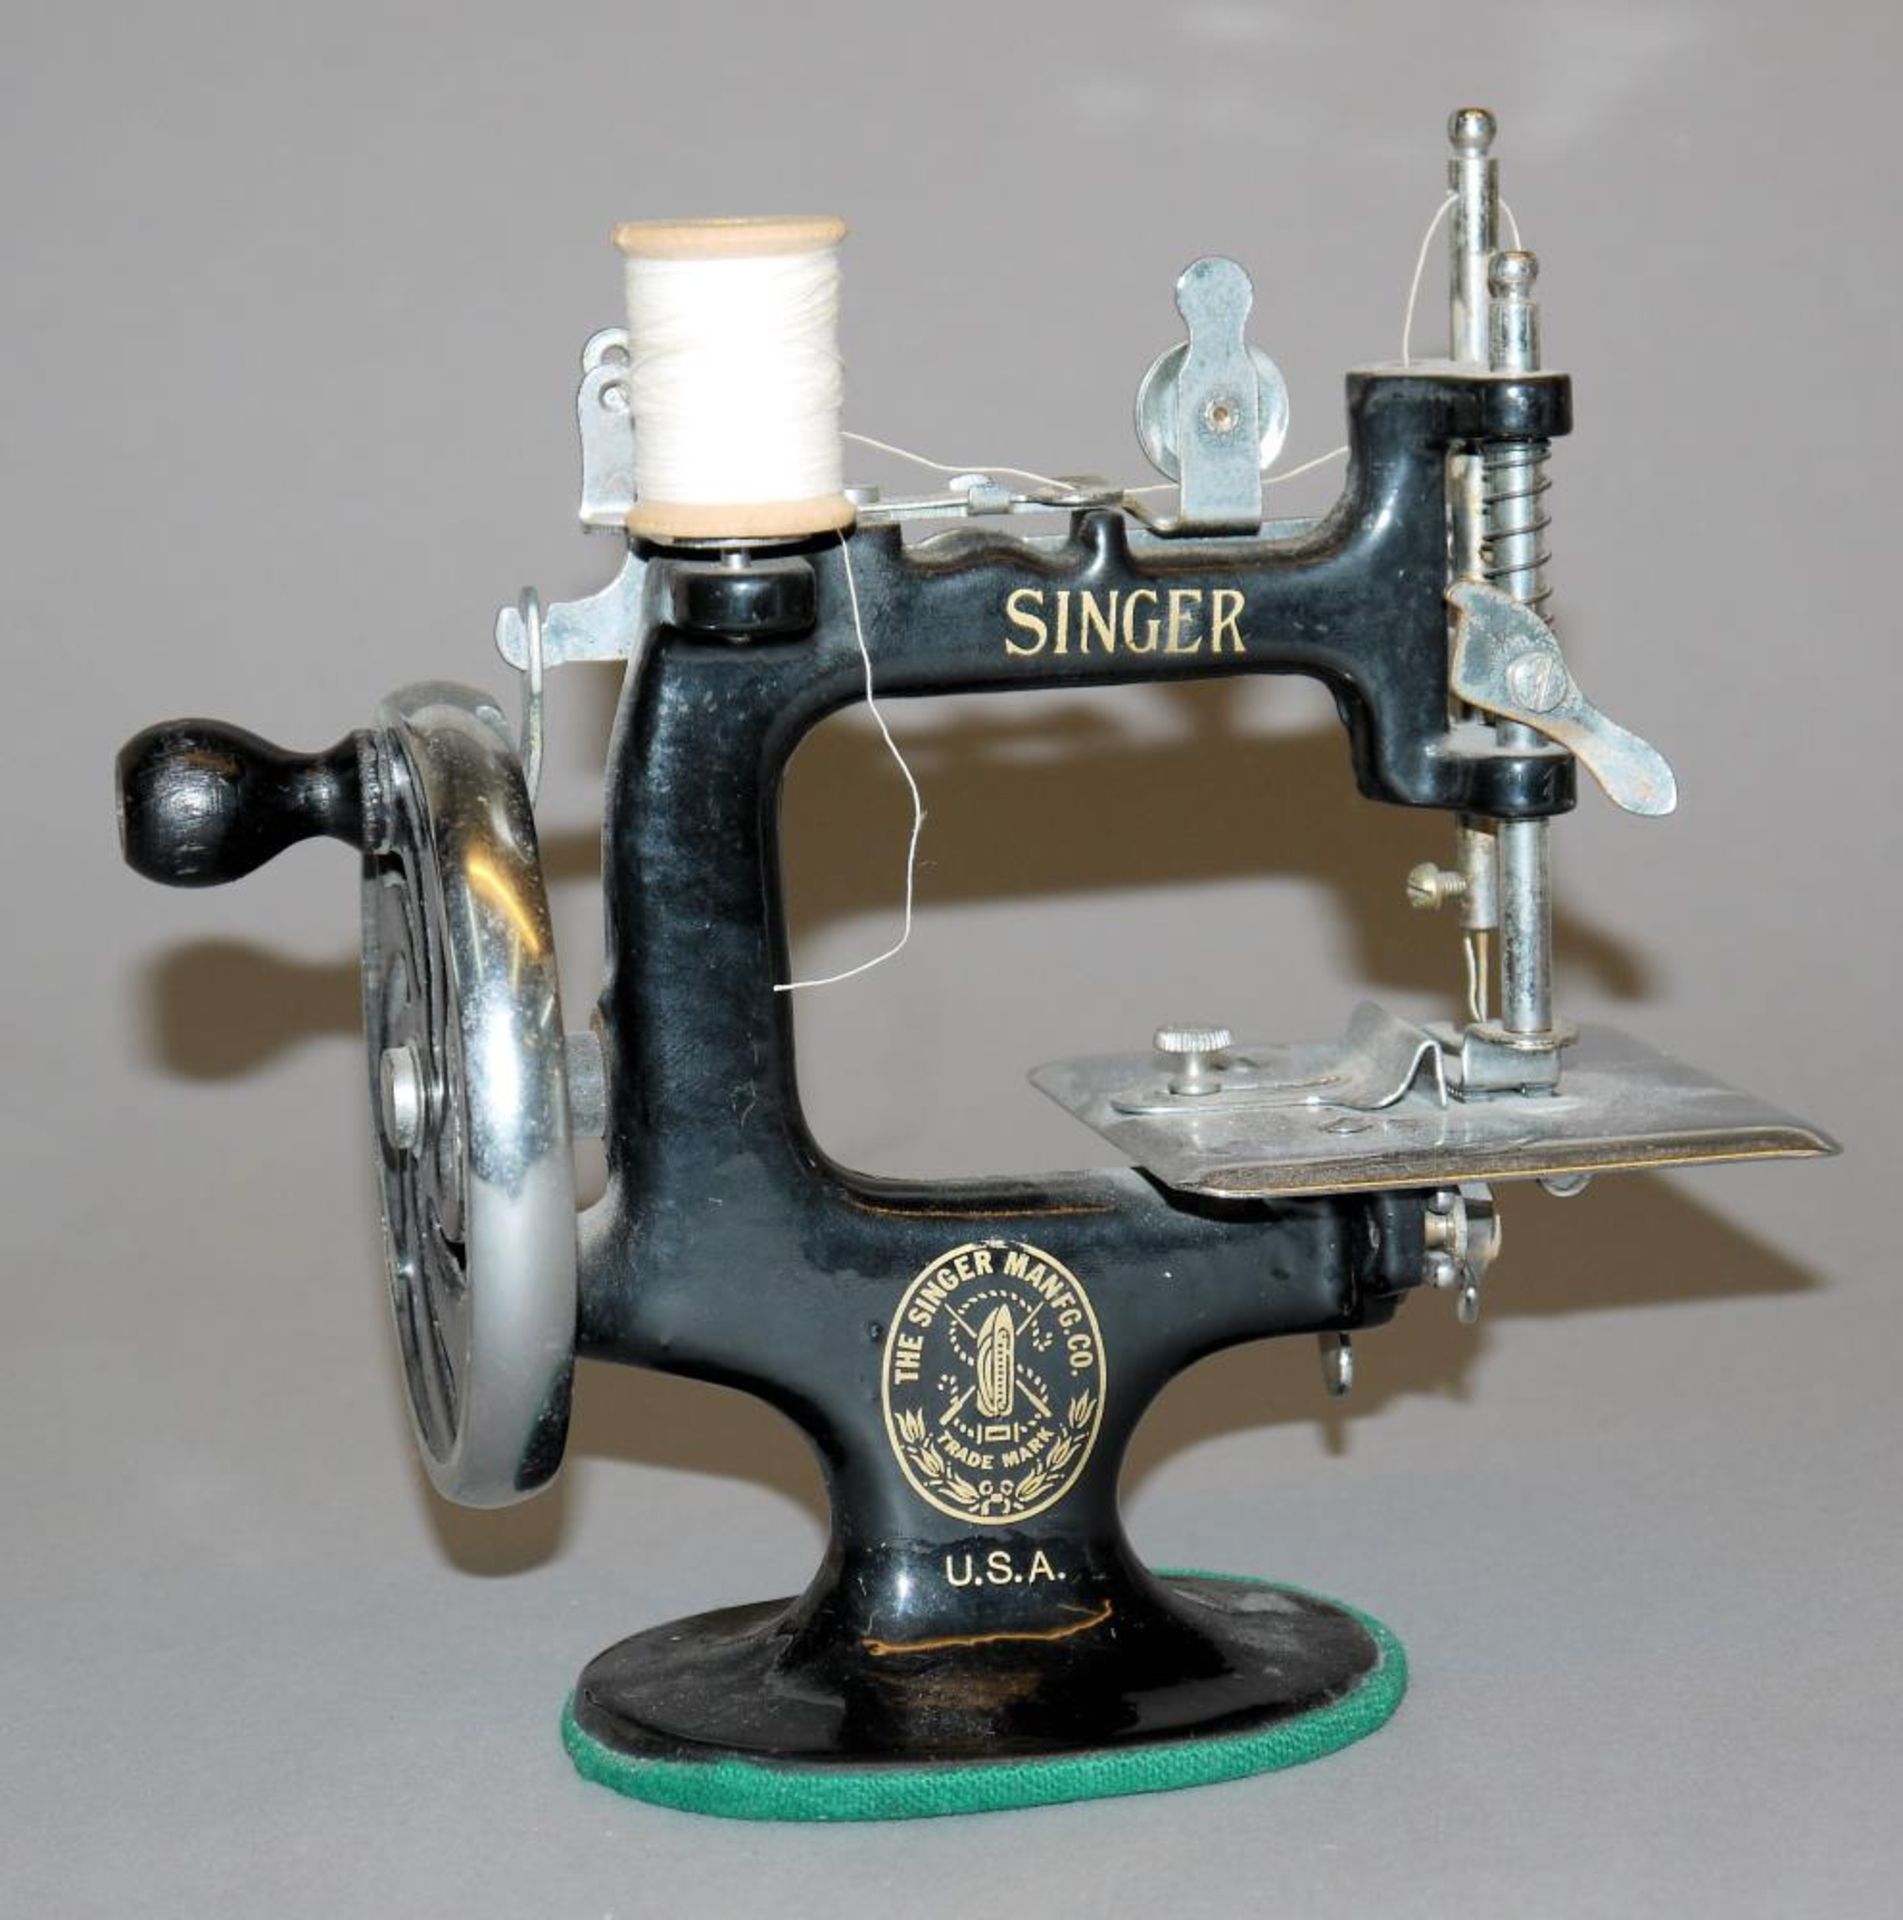 Kindernähmaschine von Singer, USA um 1910 Funktionsfähige Nähmaschine, Mod. Nr. 20, Gusseisen und